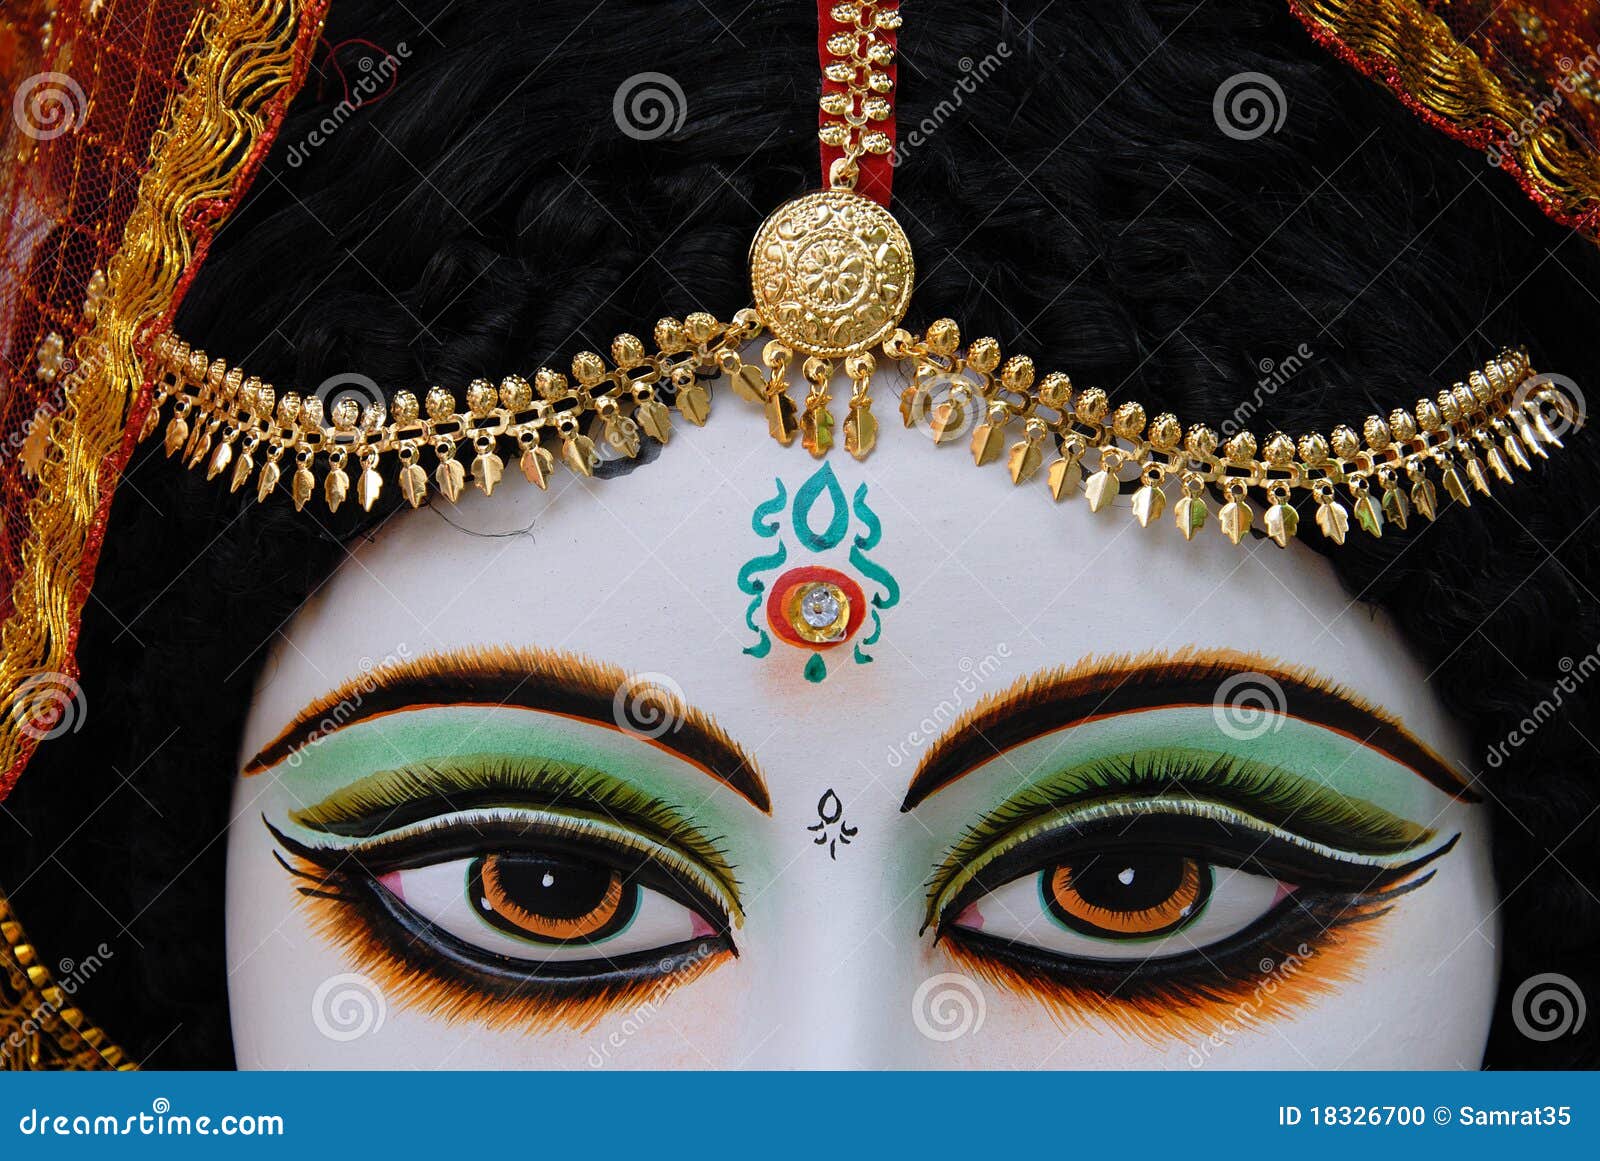 hindu god & goddess